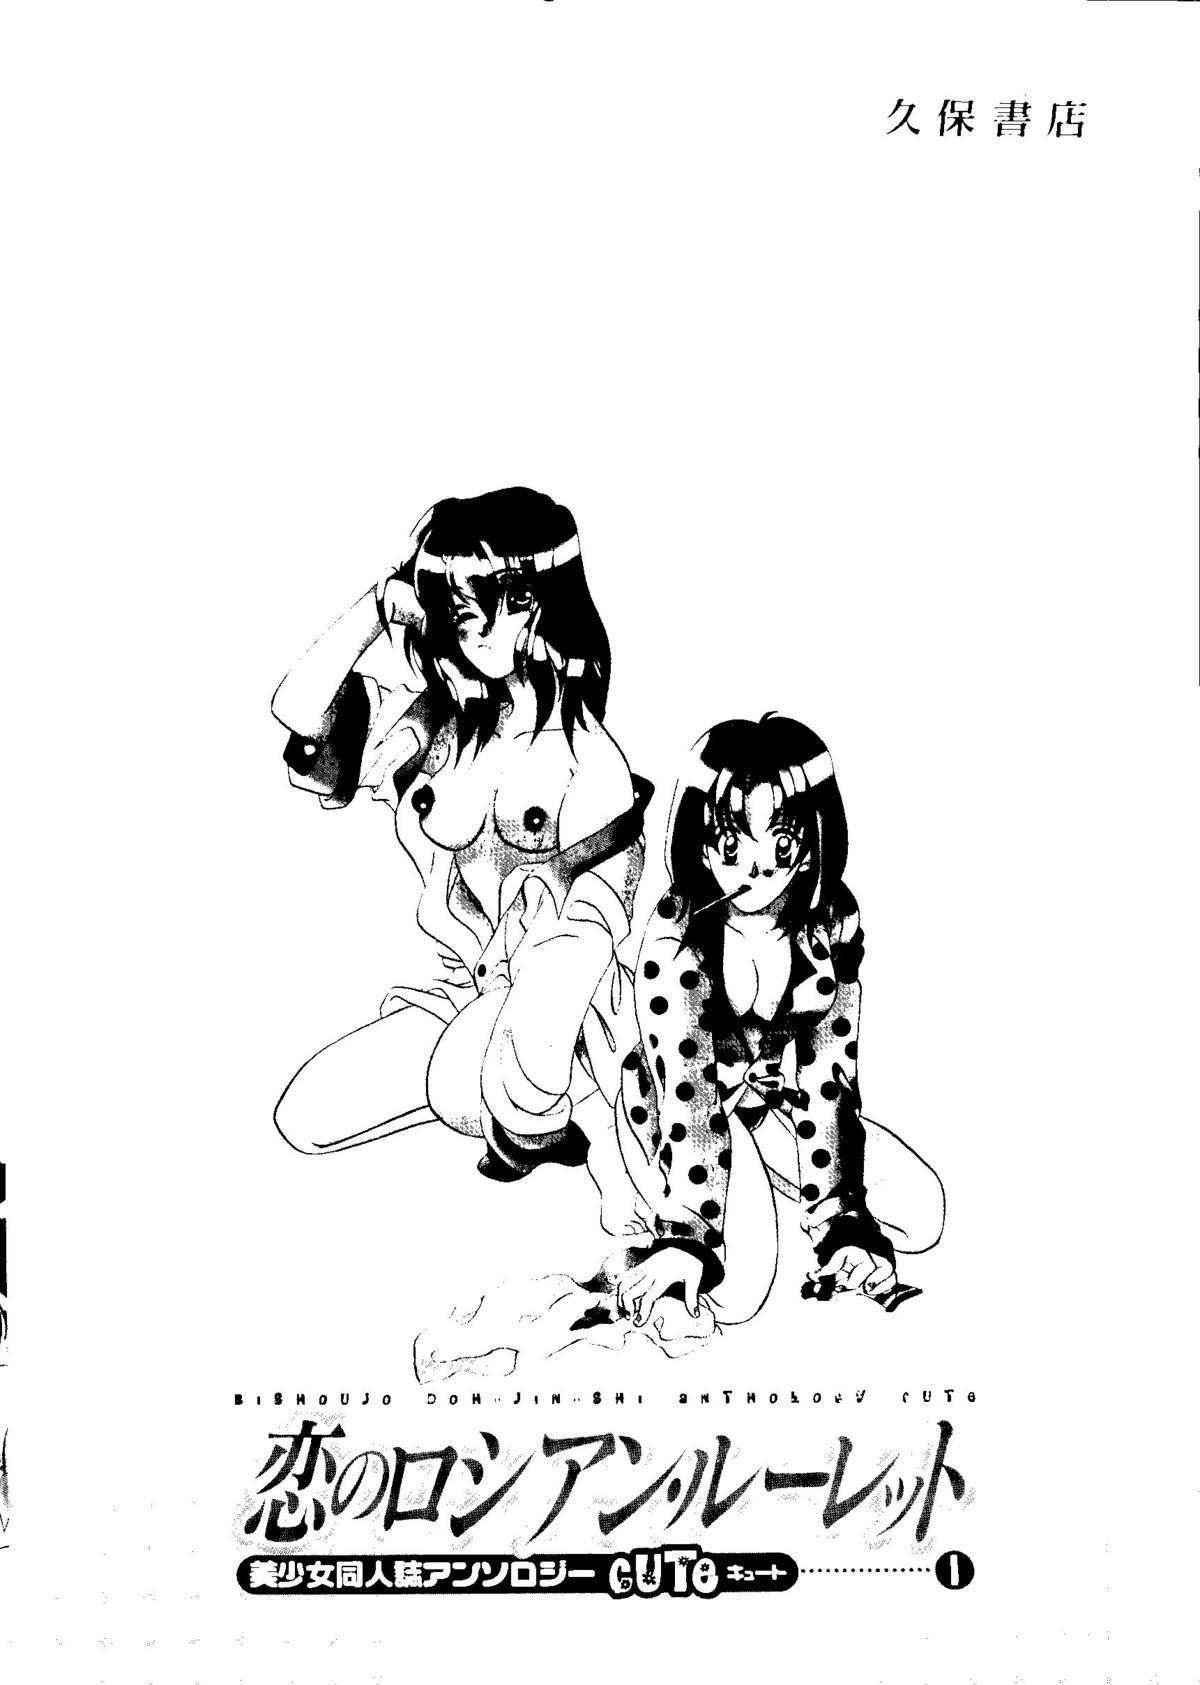 Bishoujo Doujinshi Anthology Cute 1 146